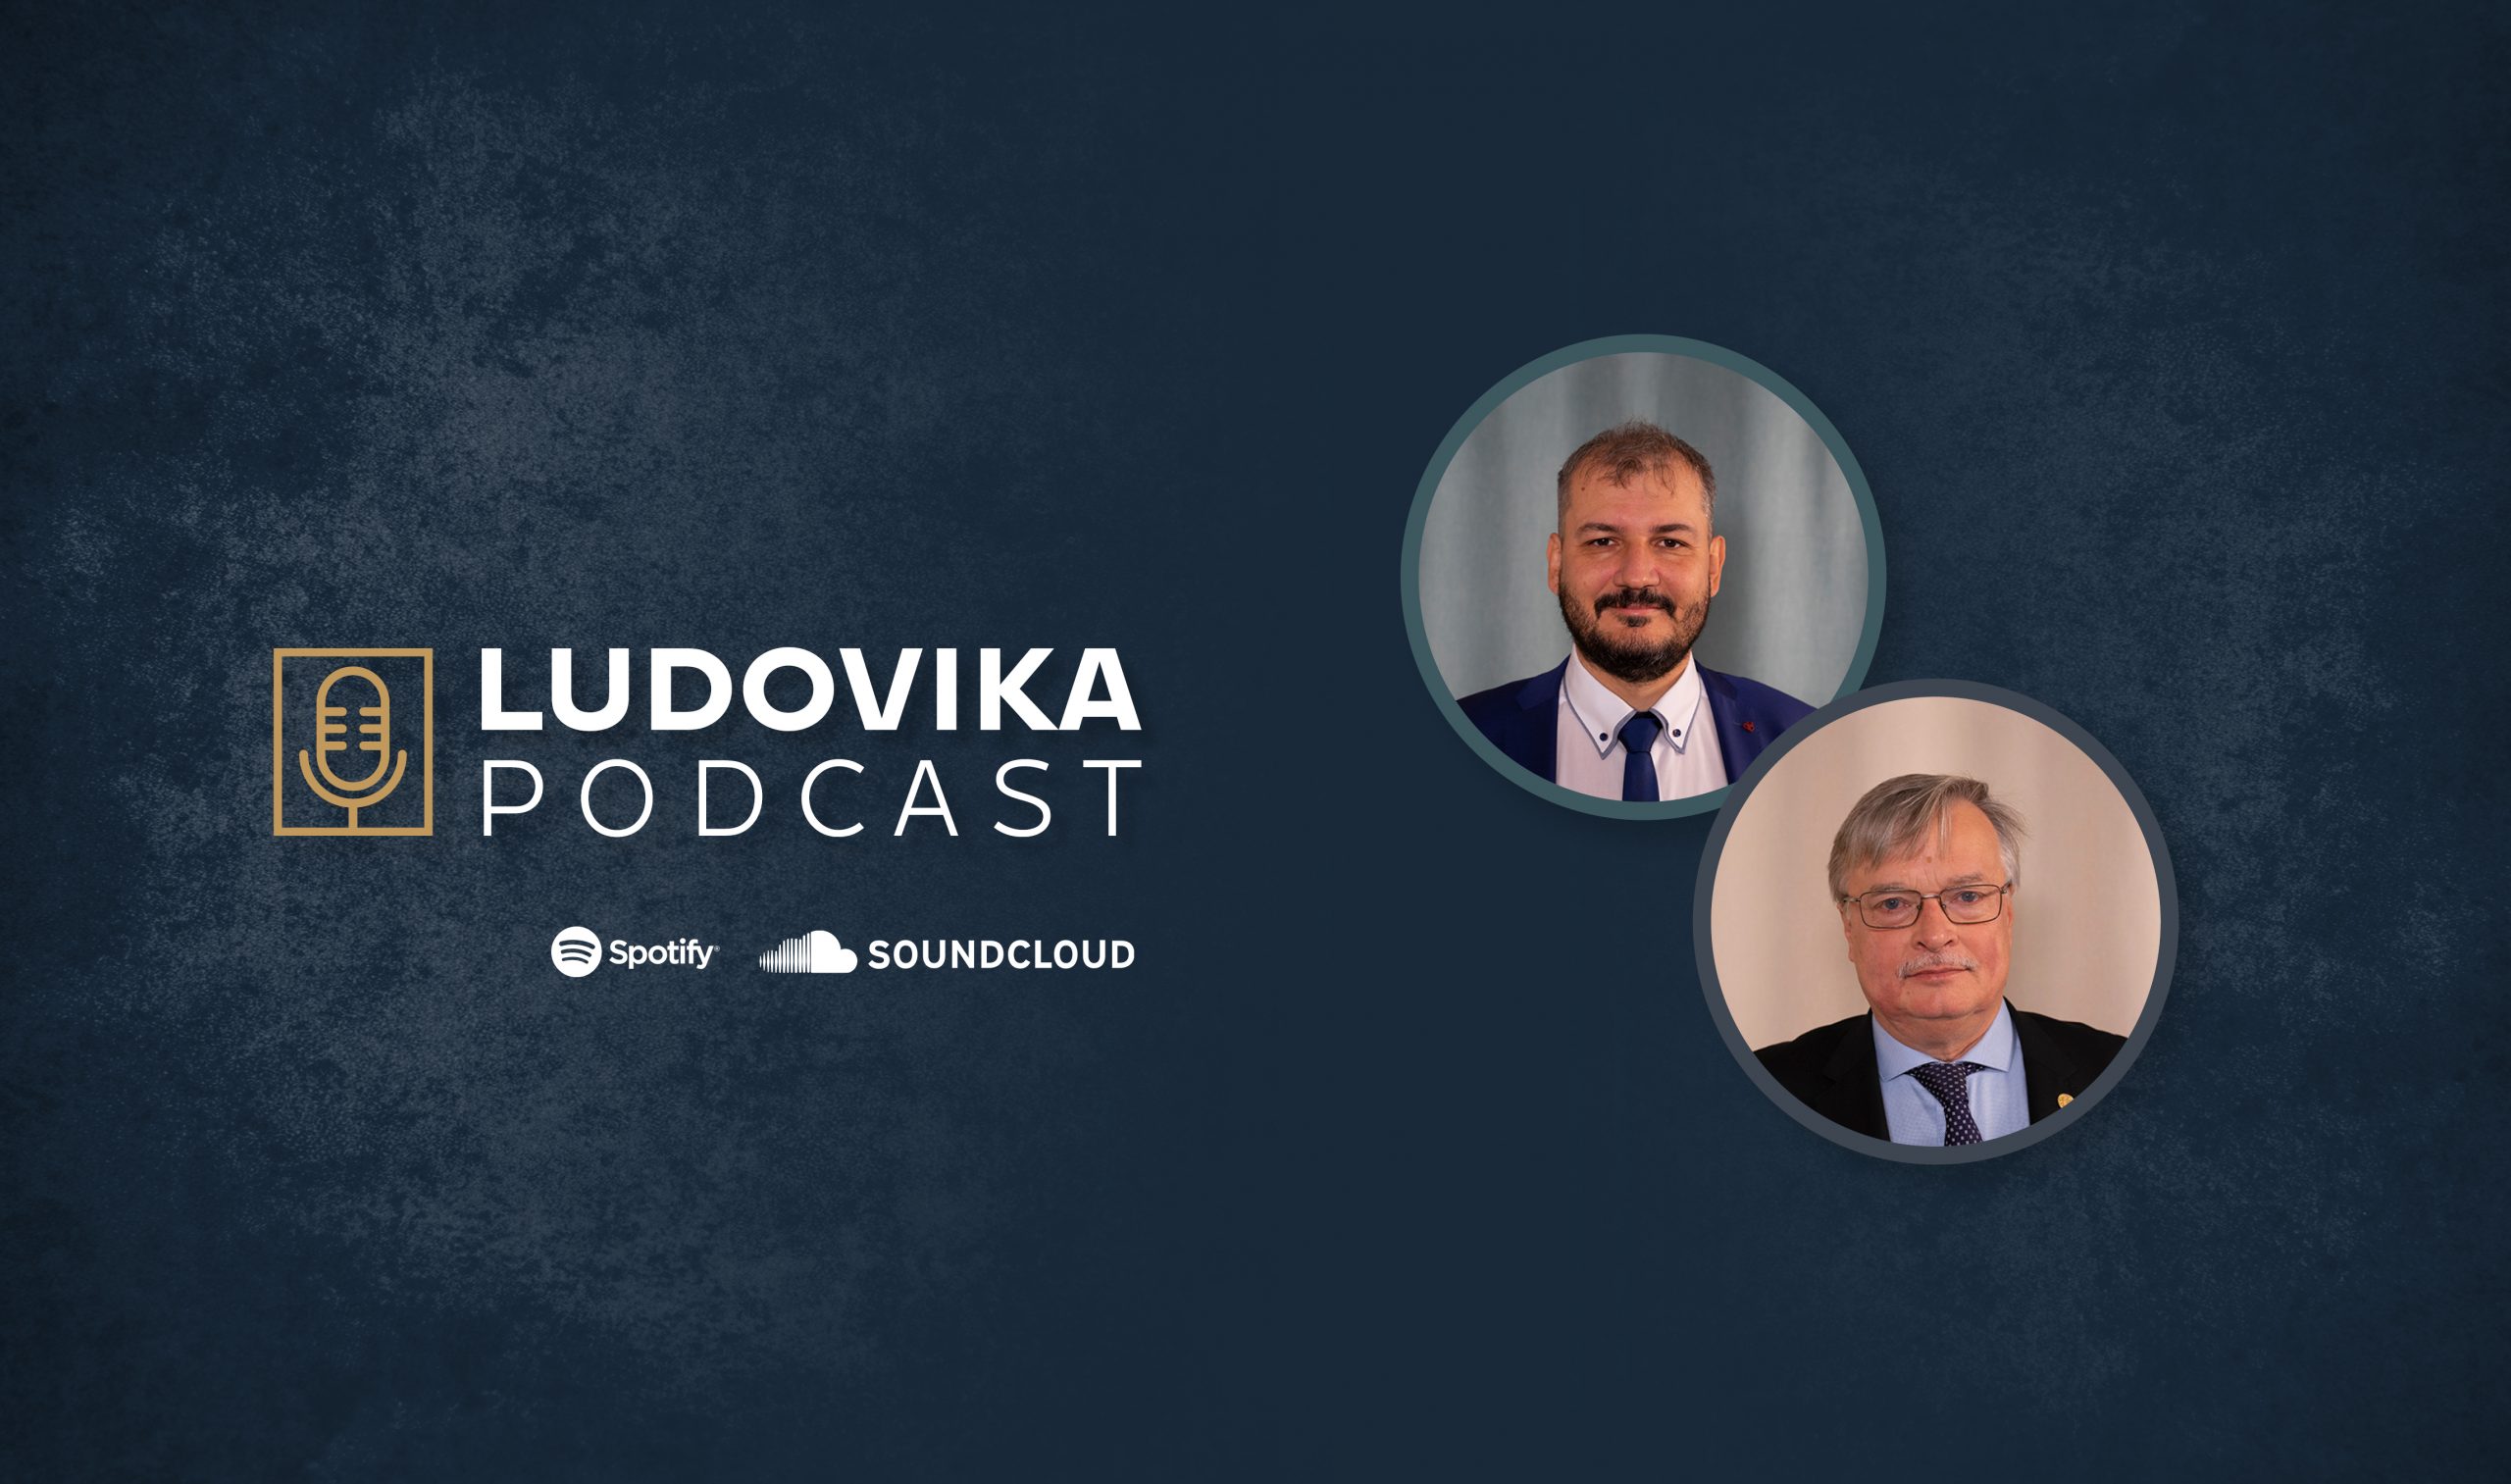 Ludovika_Podcast_Horváth-Tóth_1100x650